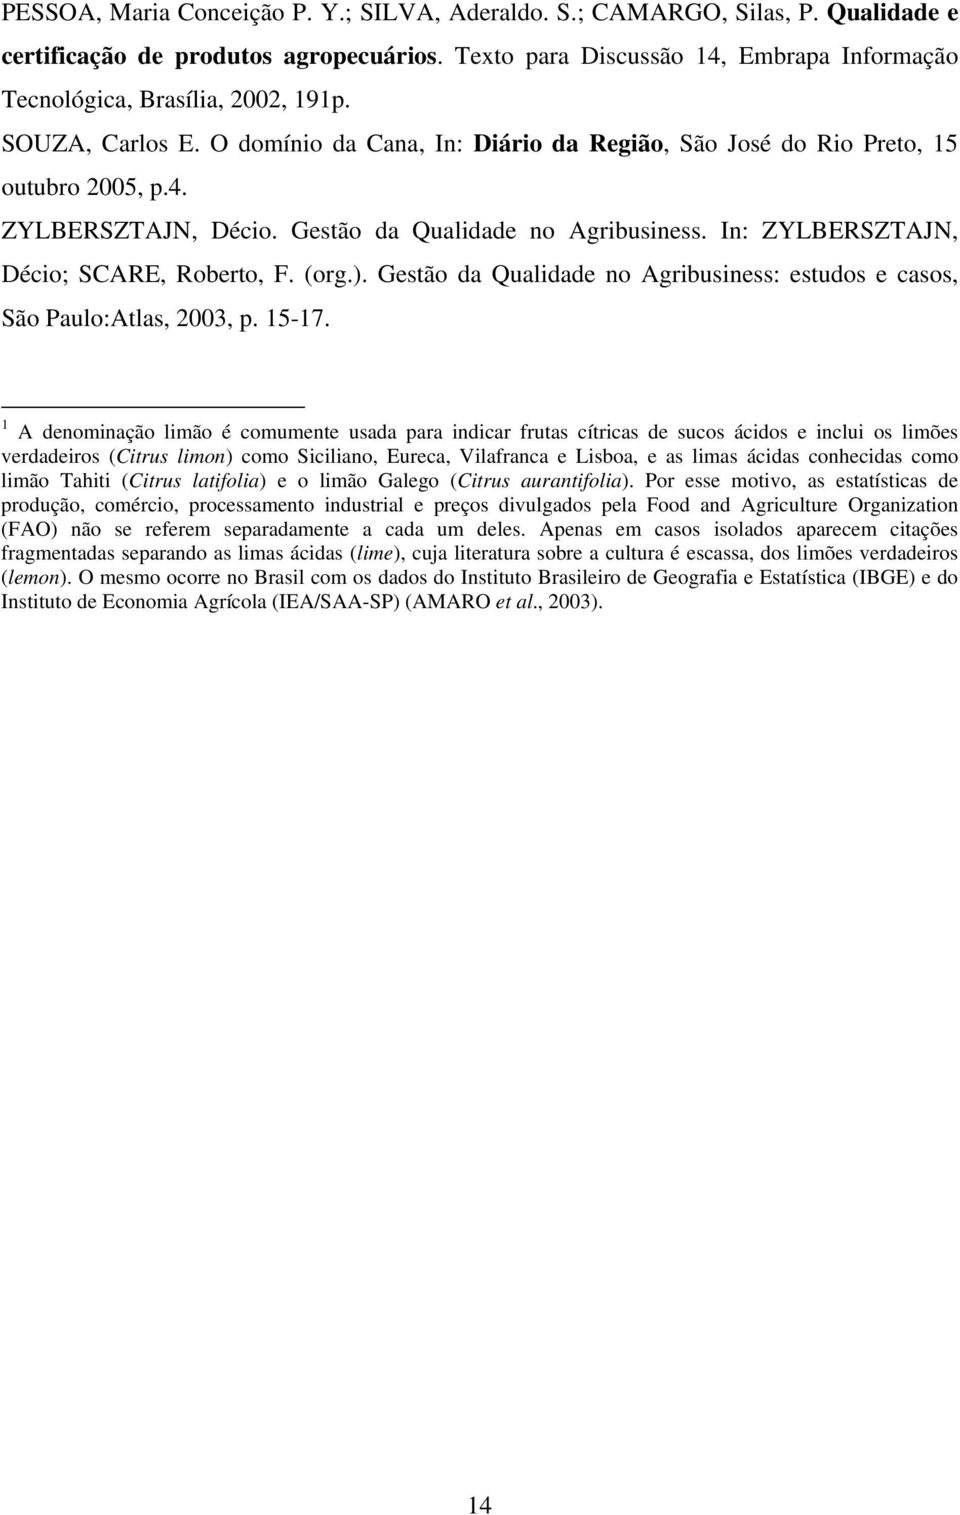 Gestão da Qualidade no Agribusiness. In: ZYLBERSZTAJN, Décio; SCARE, Roberto, F. (org.). Gestão da Qualidade no Agribusiness: estudos e casos, São Paulo:Atlas, 2003, p. 15-17.